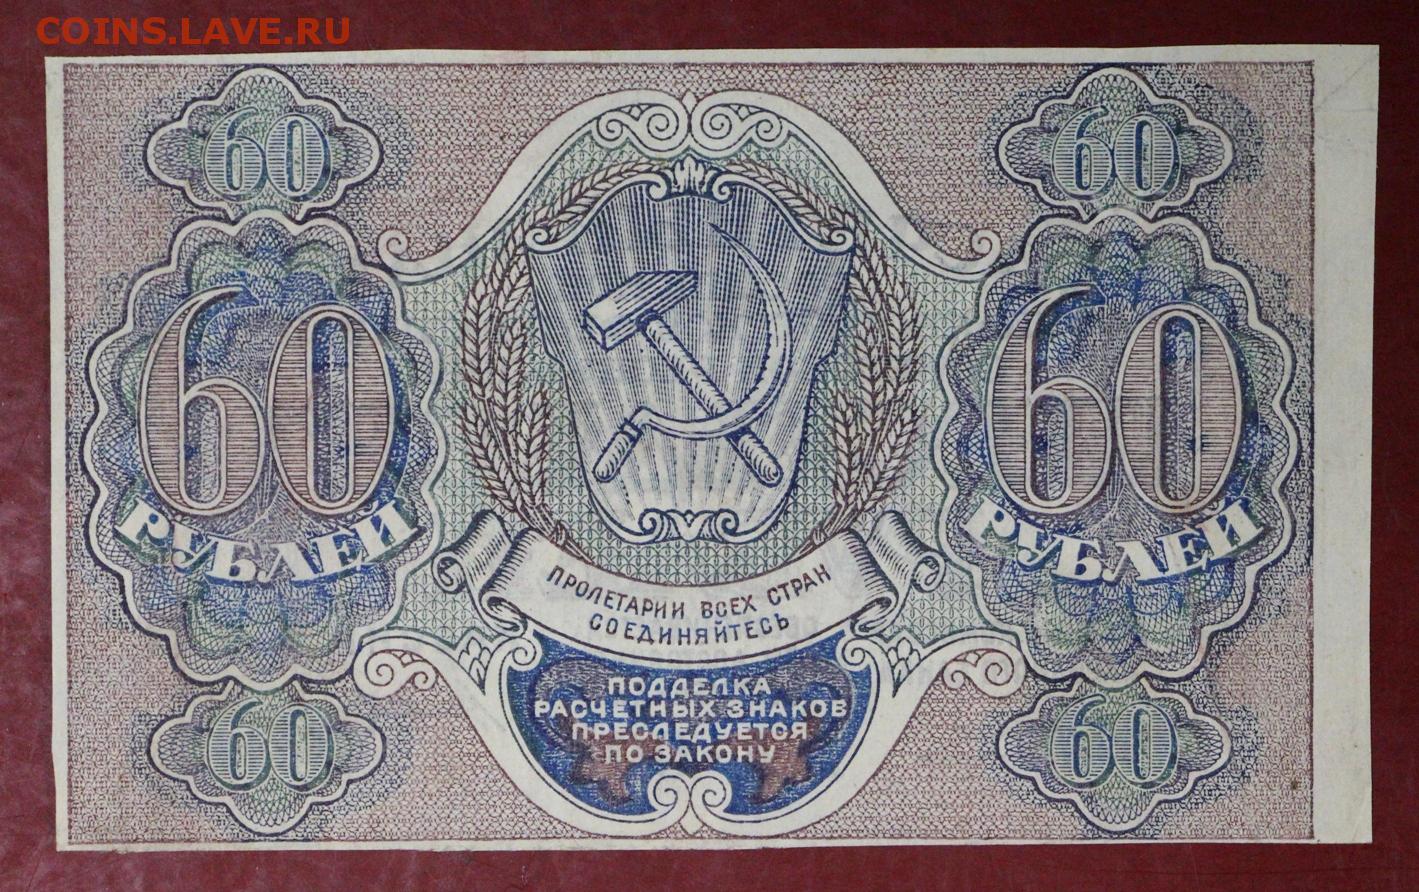 75 рублей 60. Расчётный знак 60 рублей 1919 года. 60 Рублей фотографий. 60 Рублей 1919 лист. 60 Рублей картинка.